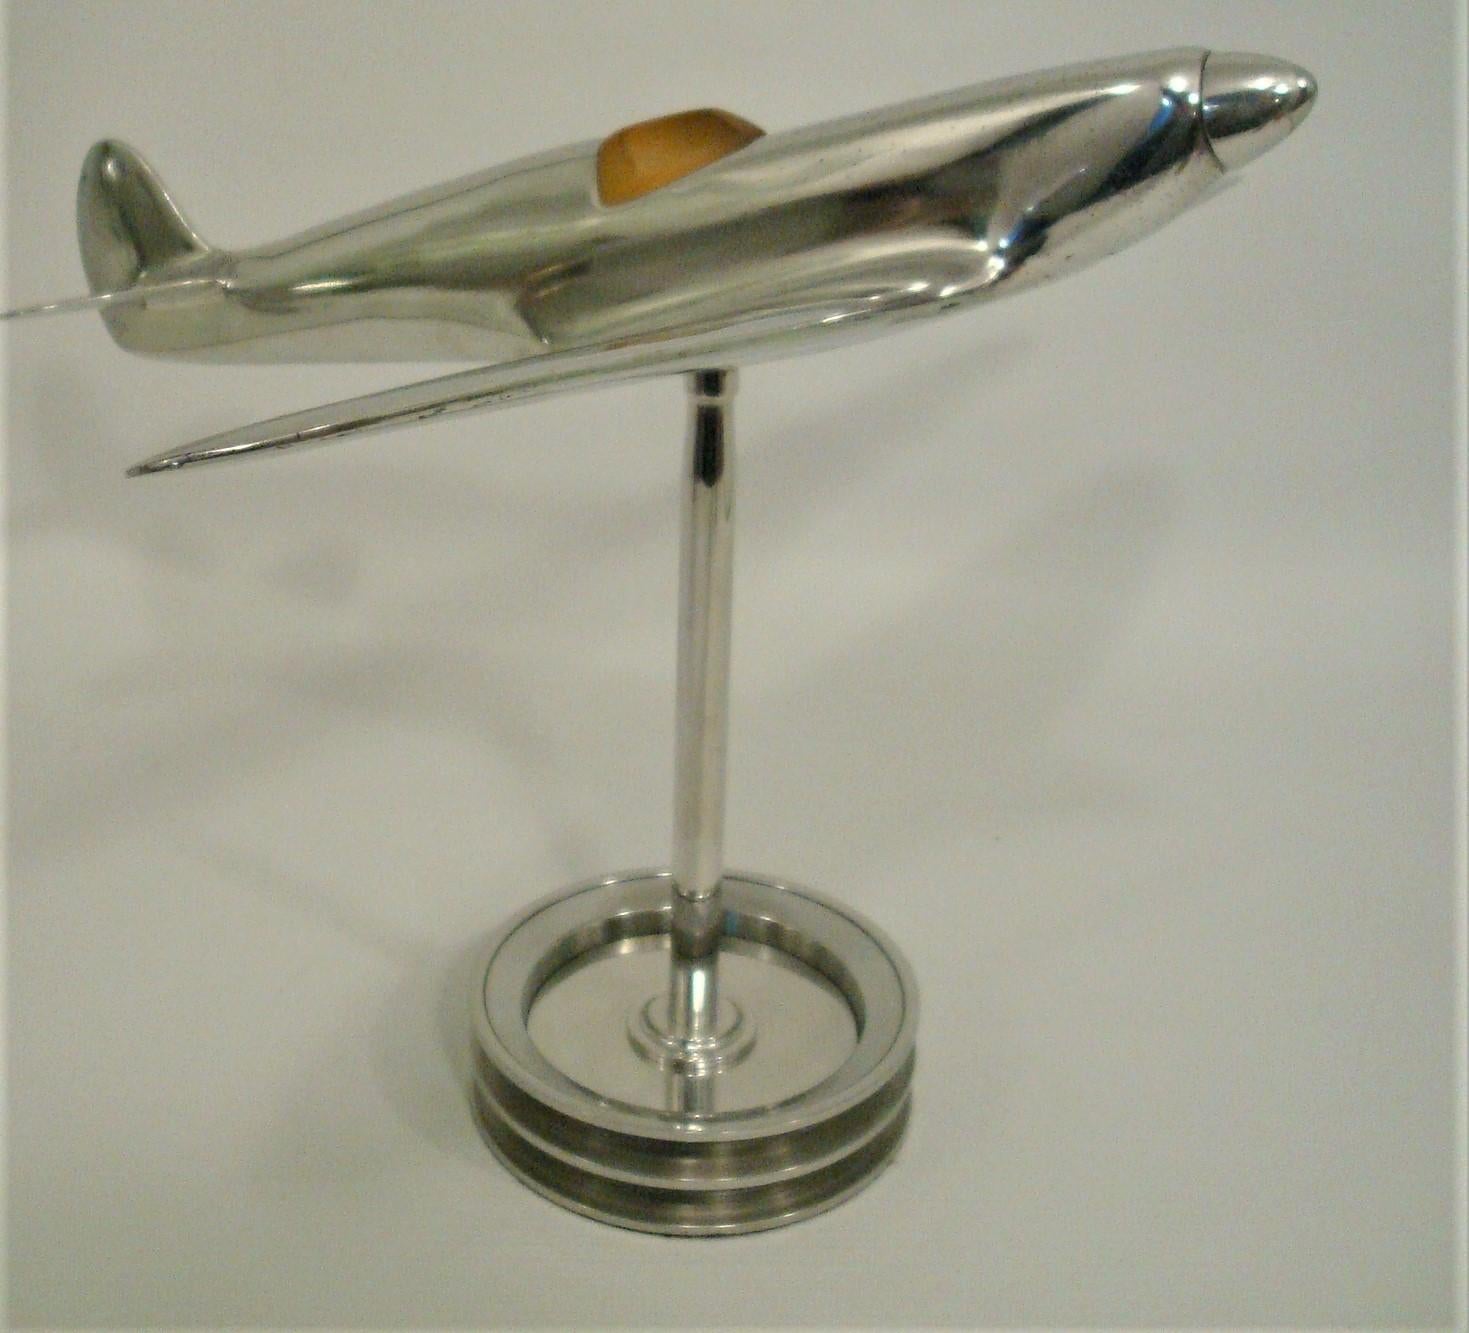 spitfire desk model